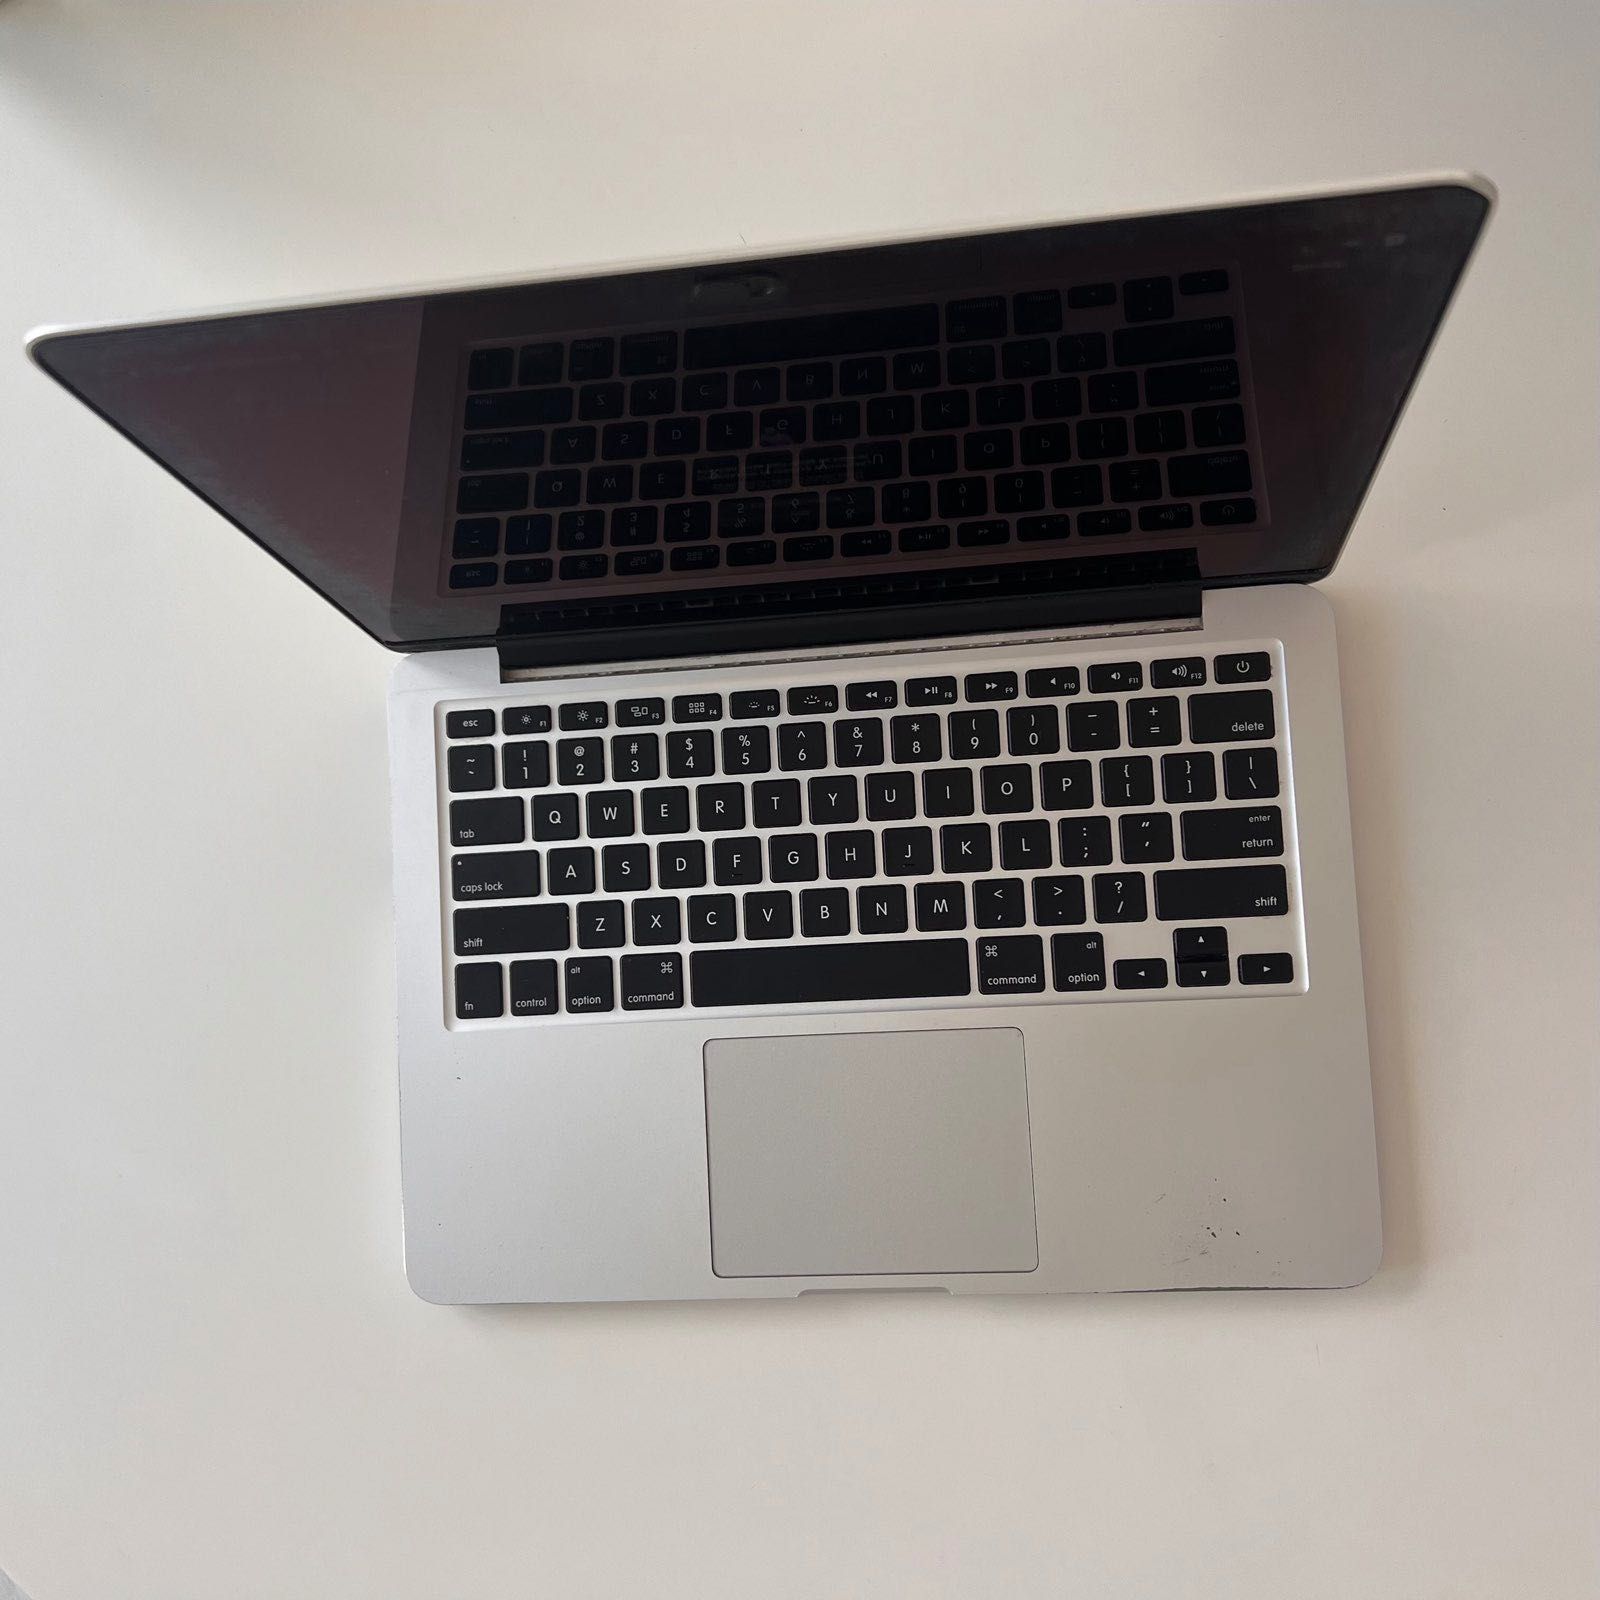 MacBook Pro 13" with Retina display 2015